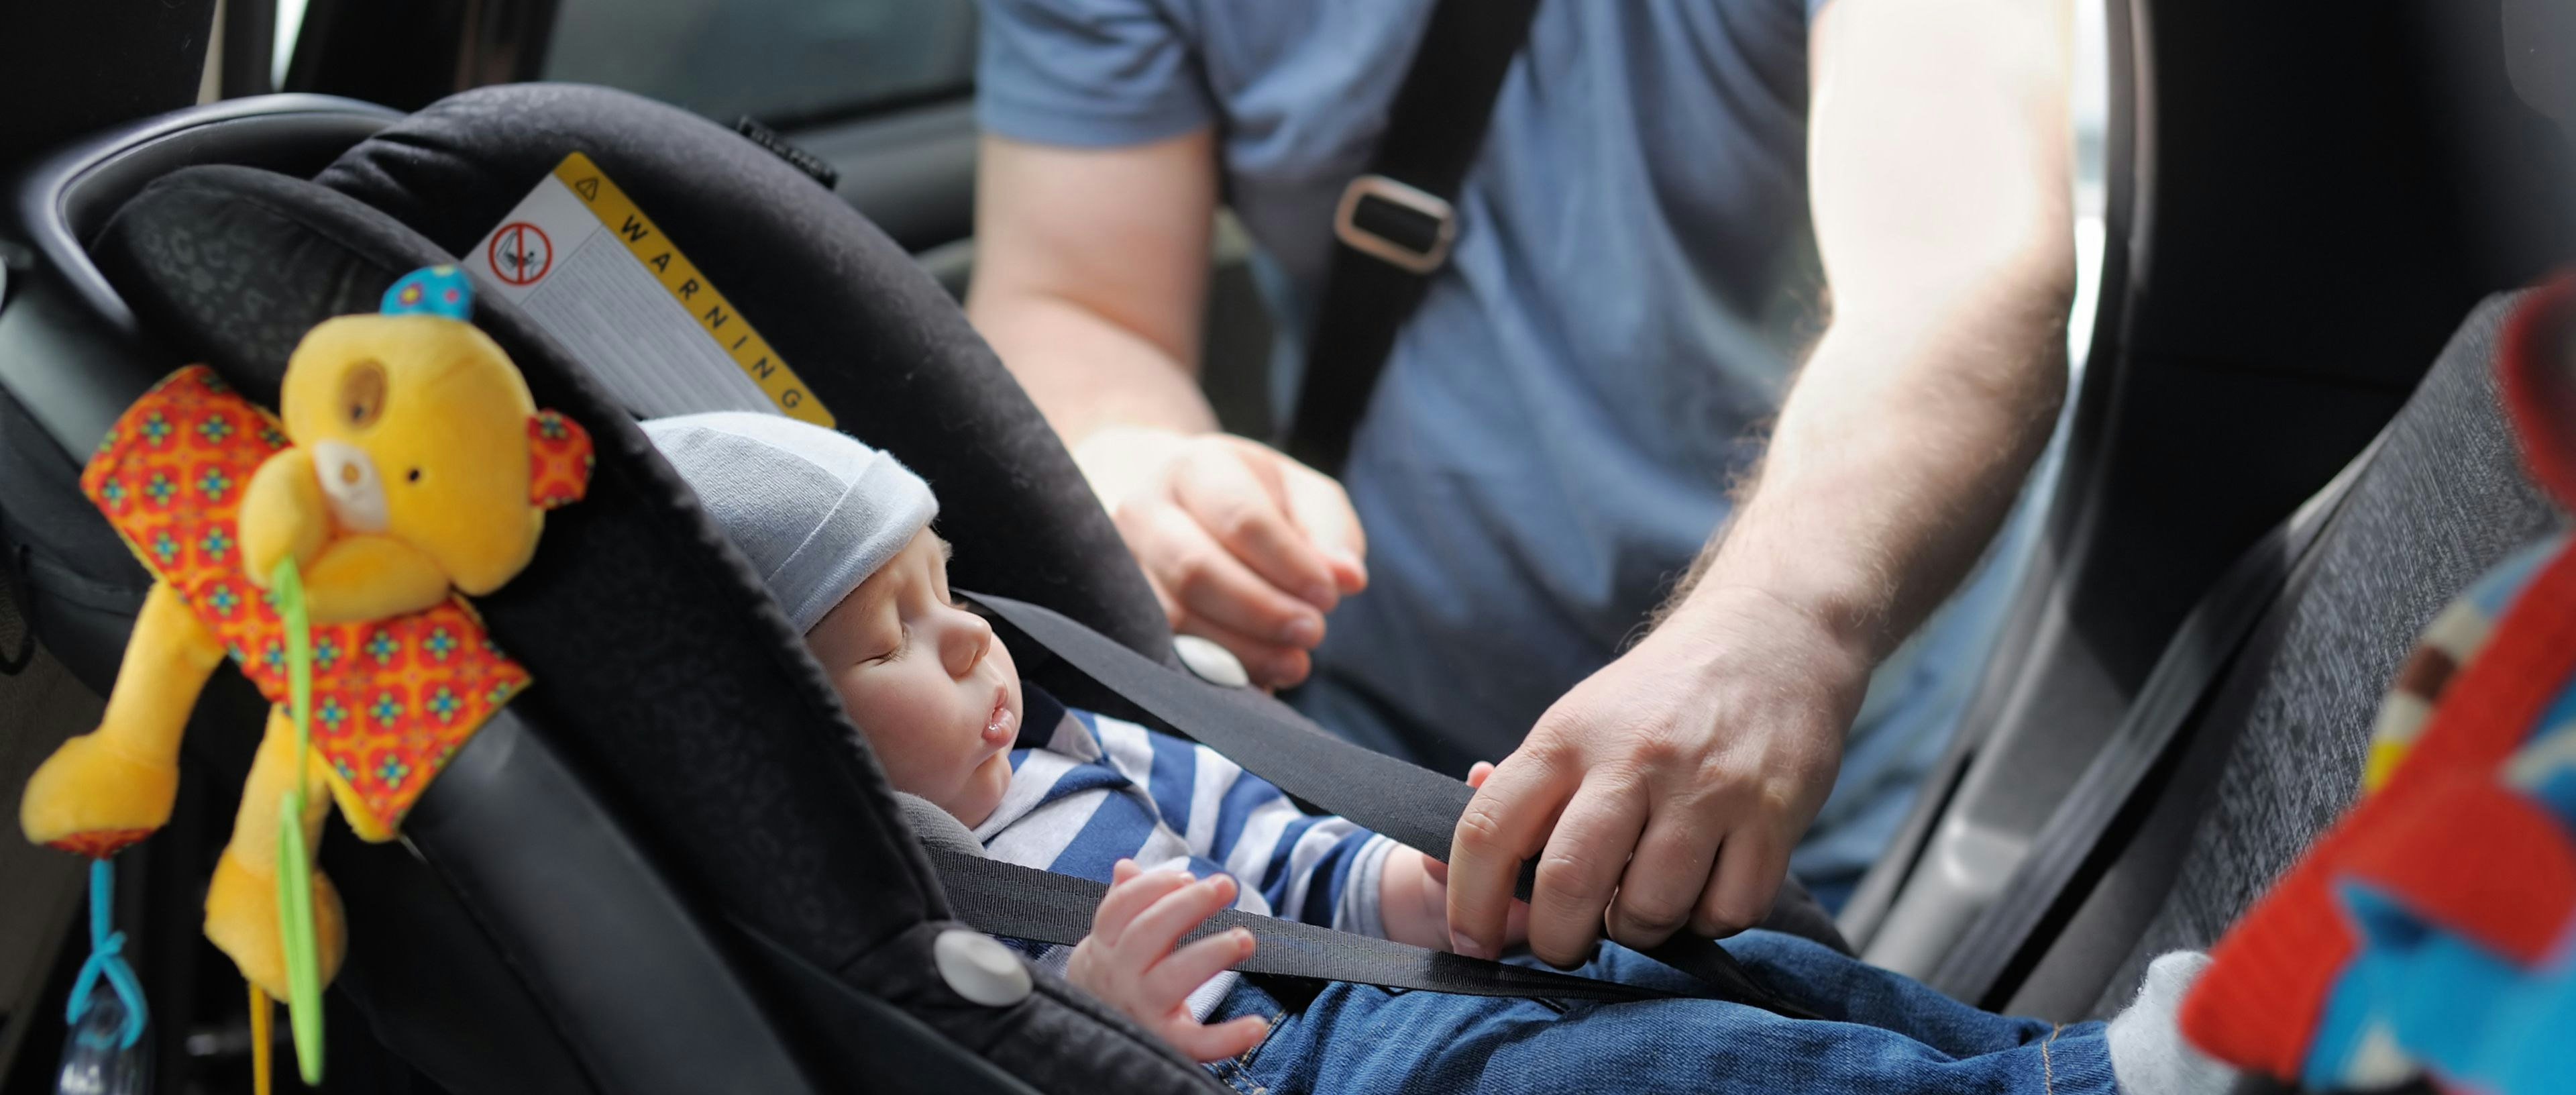 Le RDV sécurité de l'enfant en voiture - Mercredi 6 mars